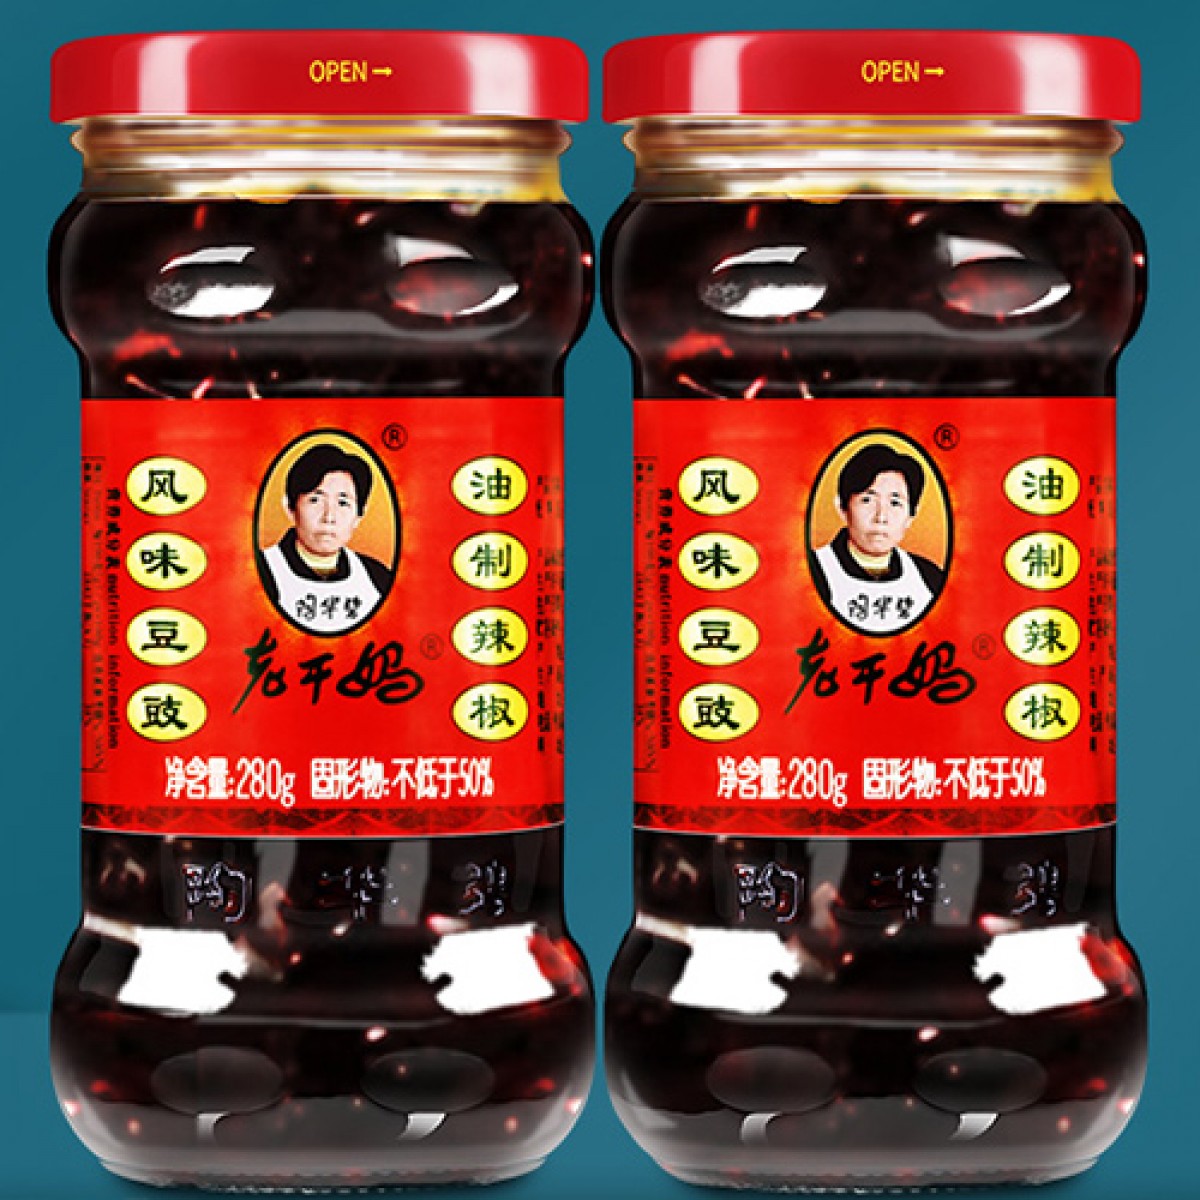 老幹媽風味豆豉油辣椒醬280g*2/3瓶裝